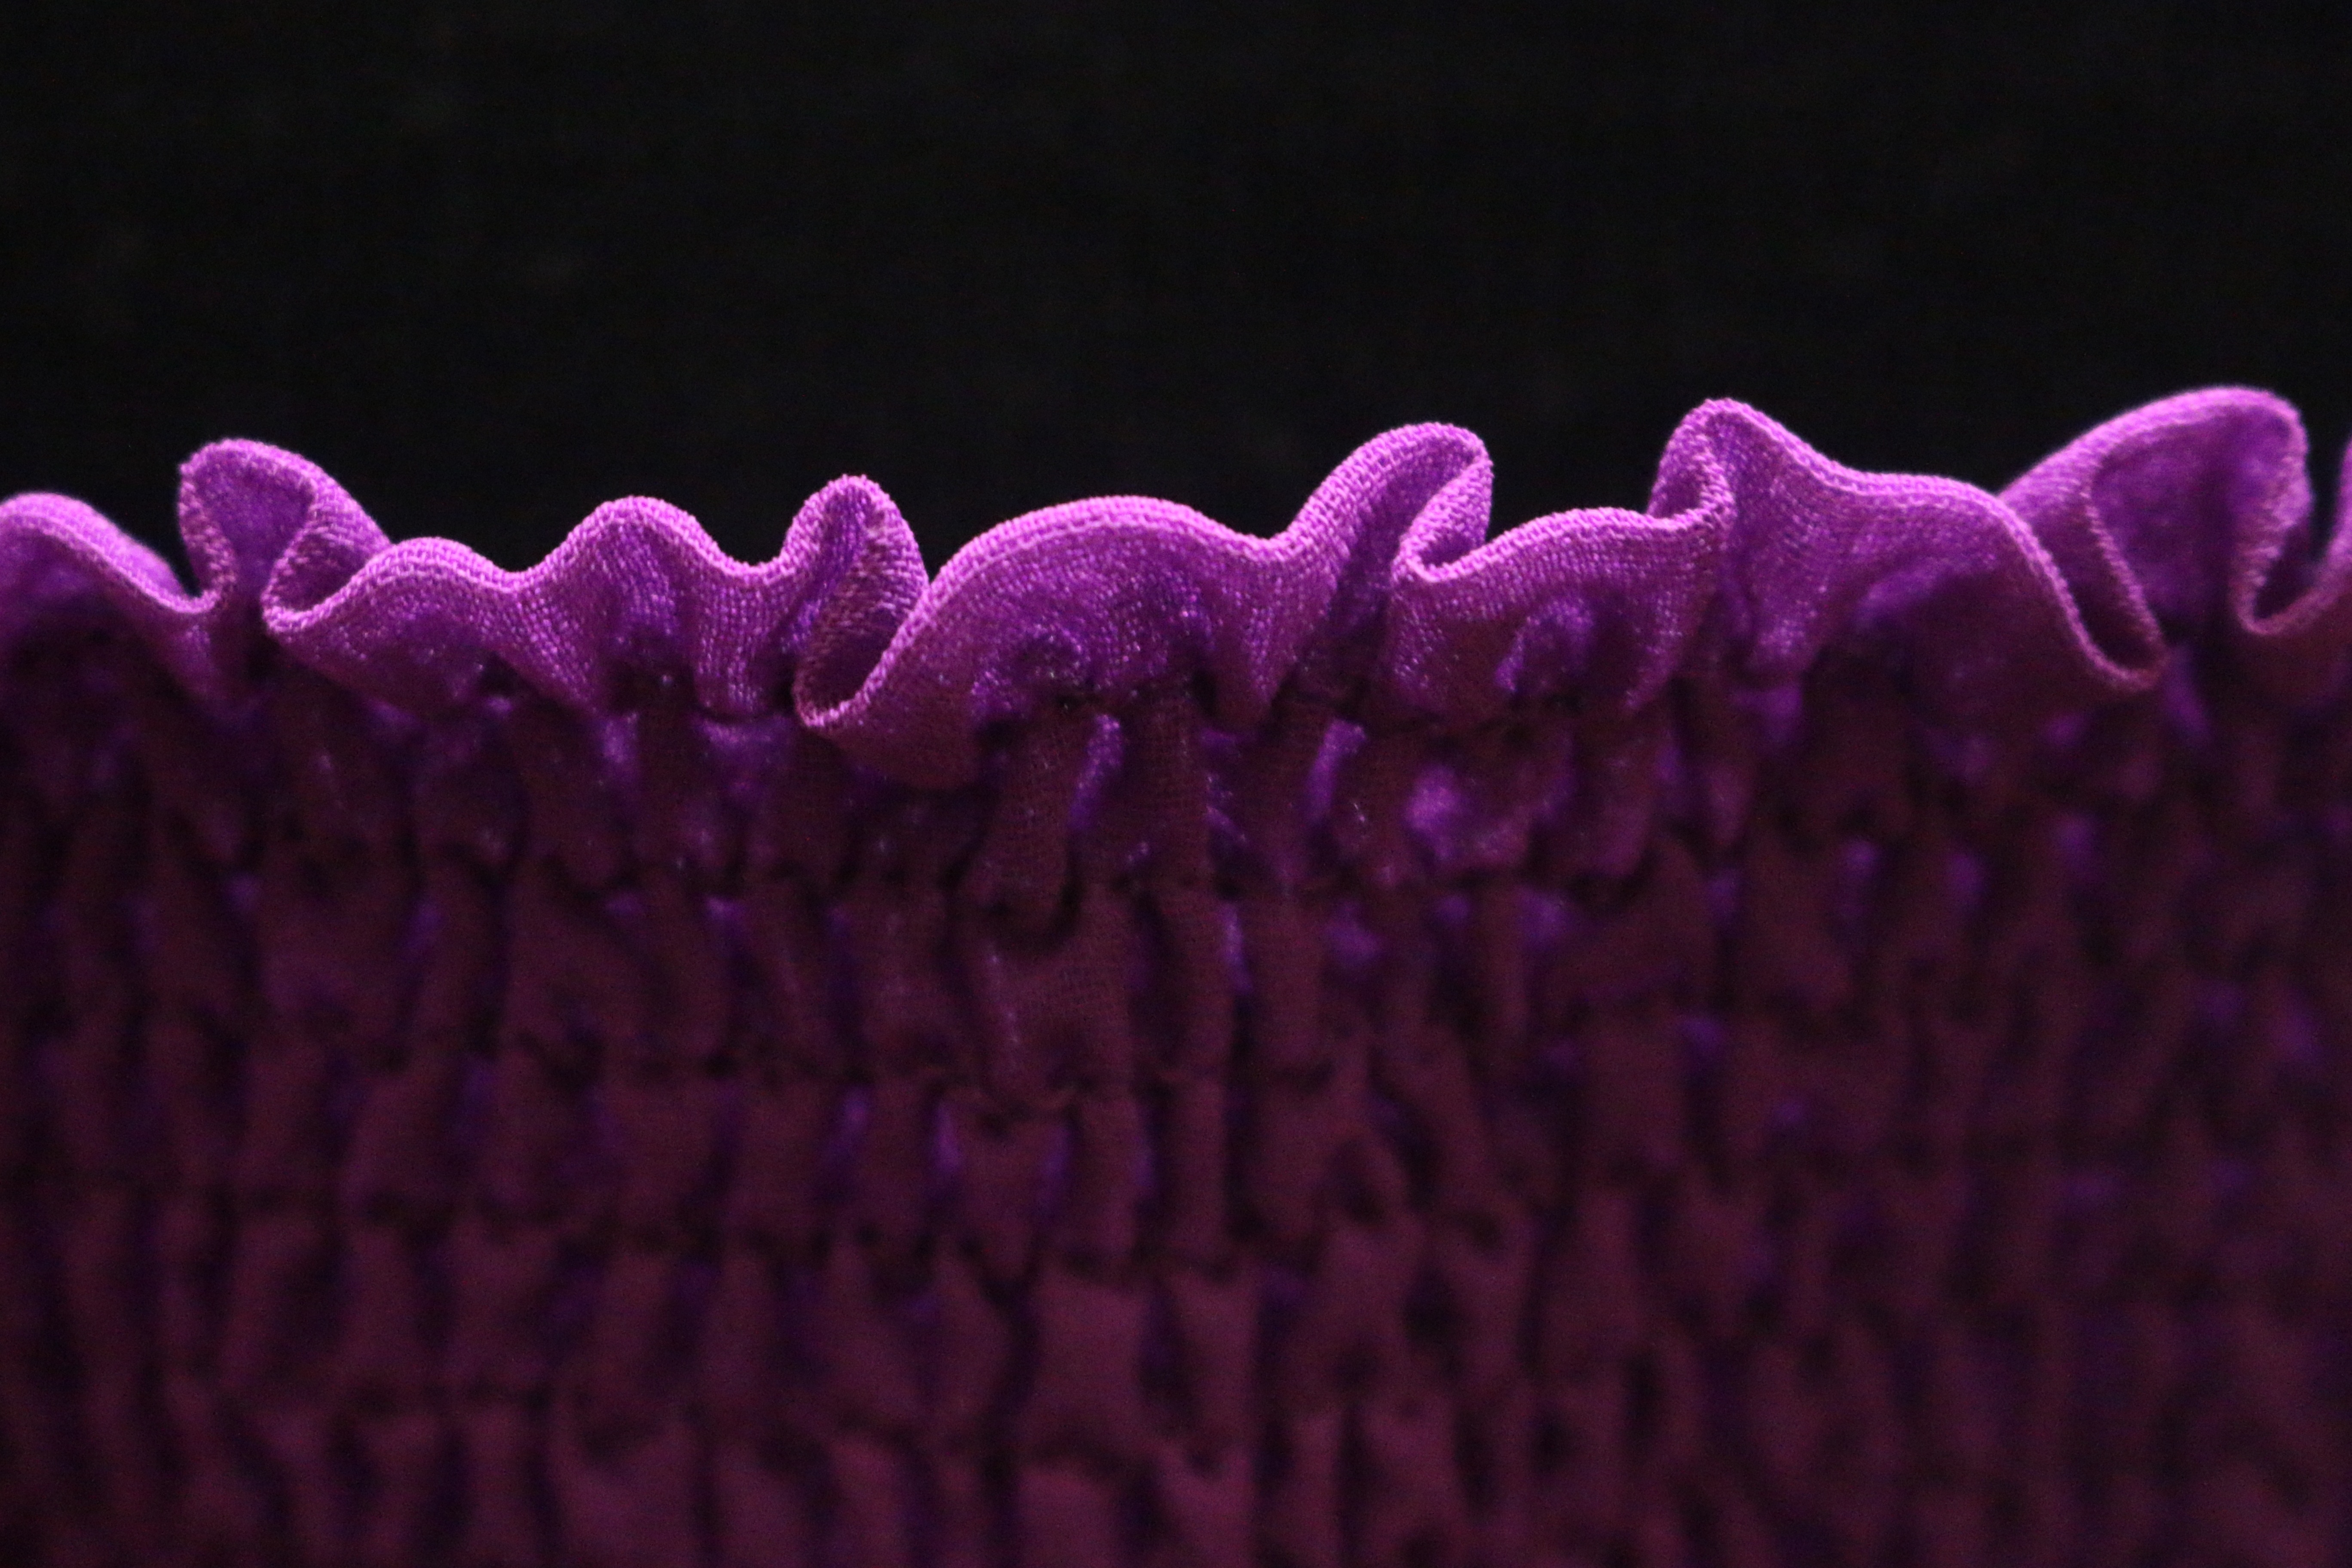 purple textile